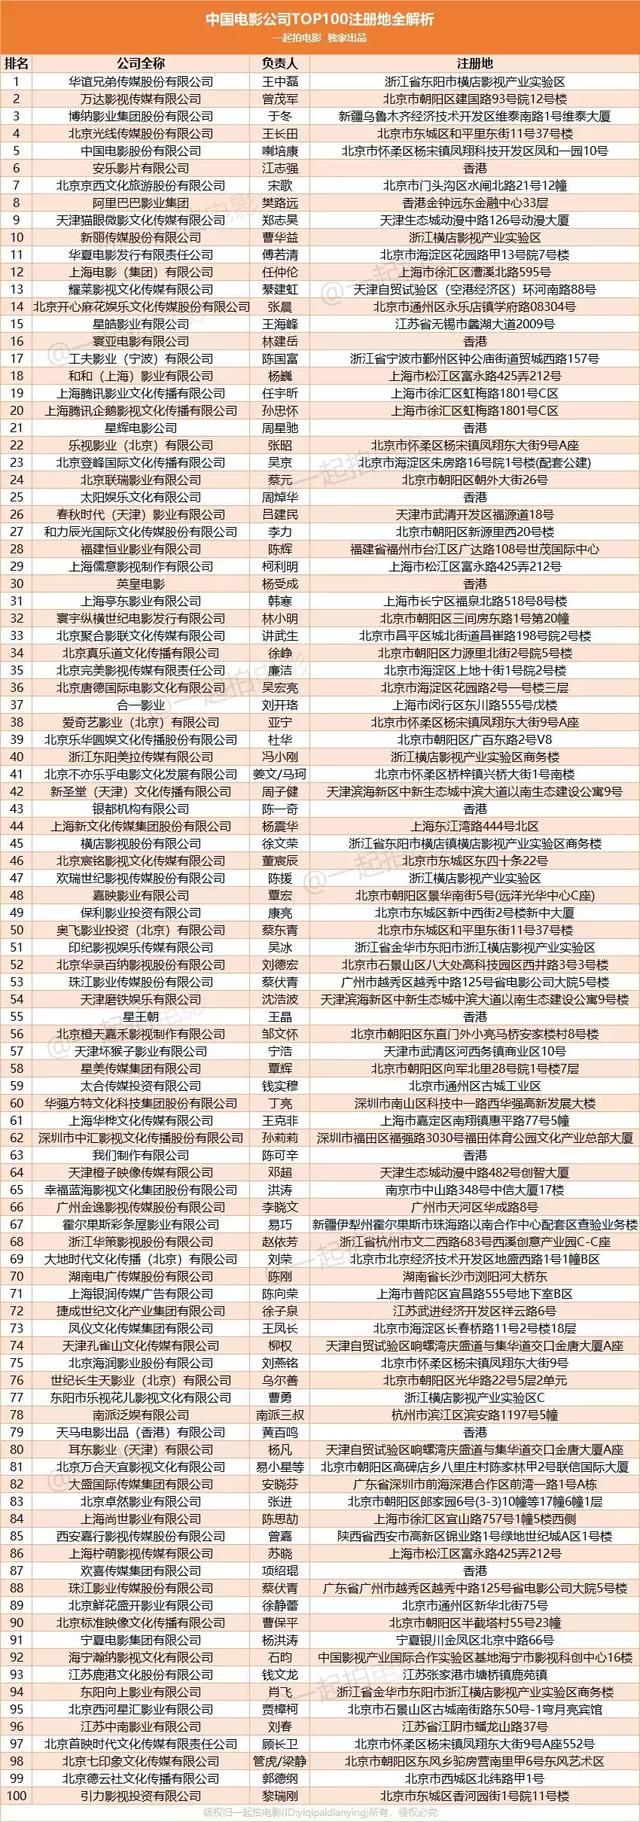 中国TOP100电影公司地理图鉴全解析!头部公司